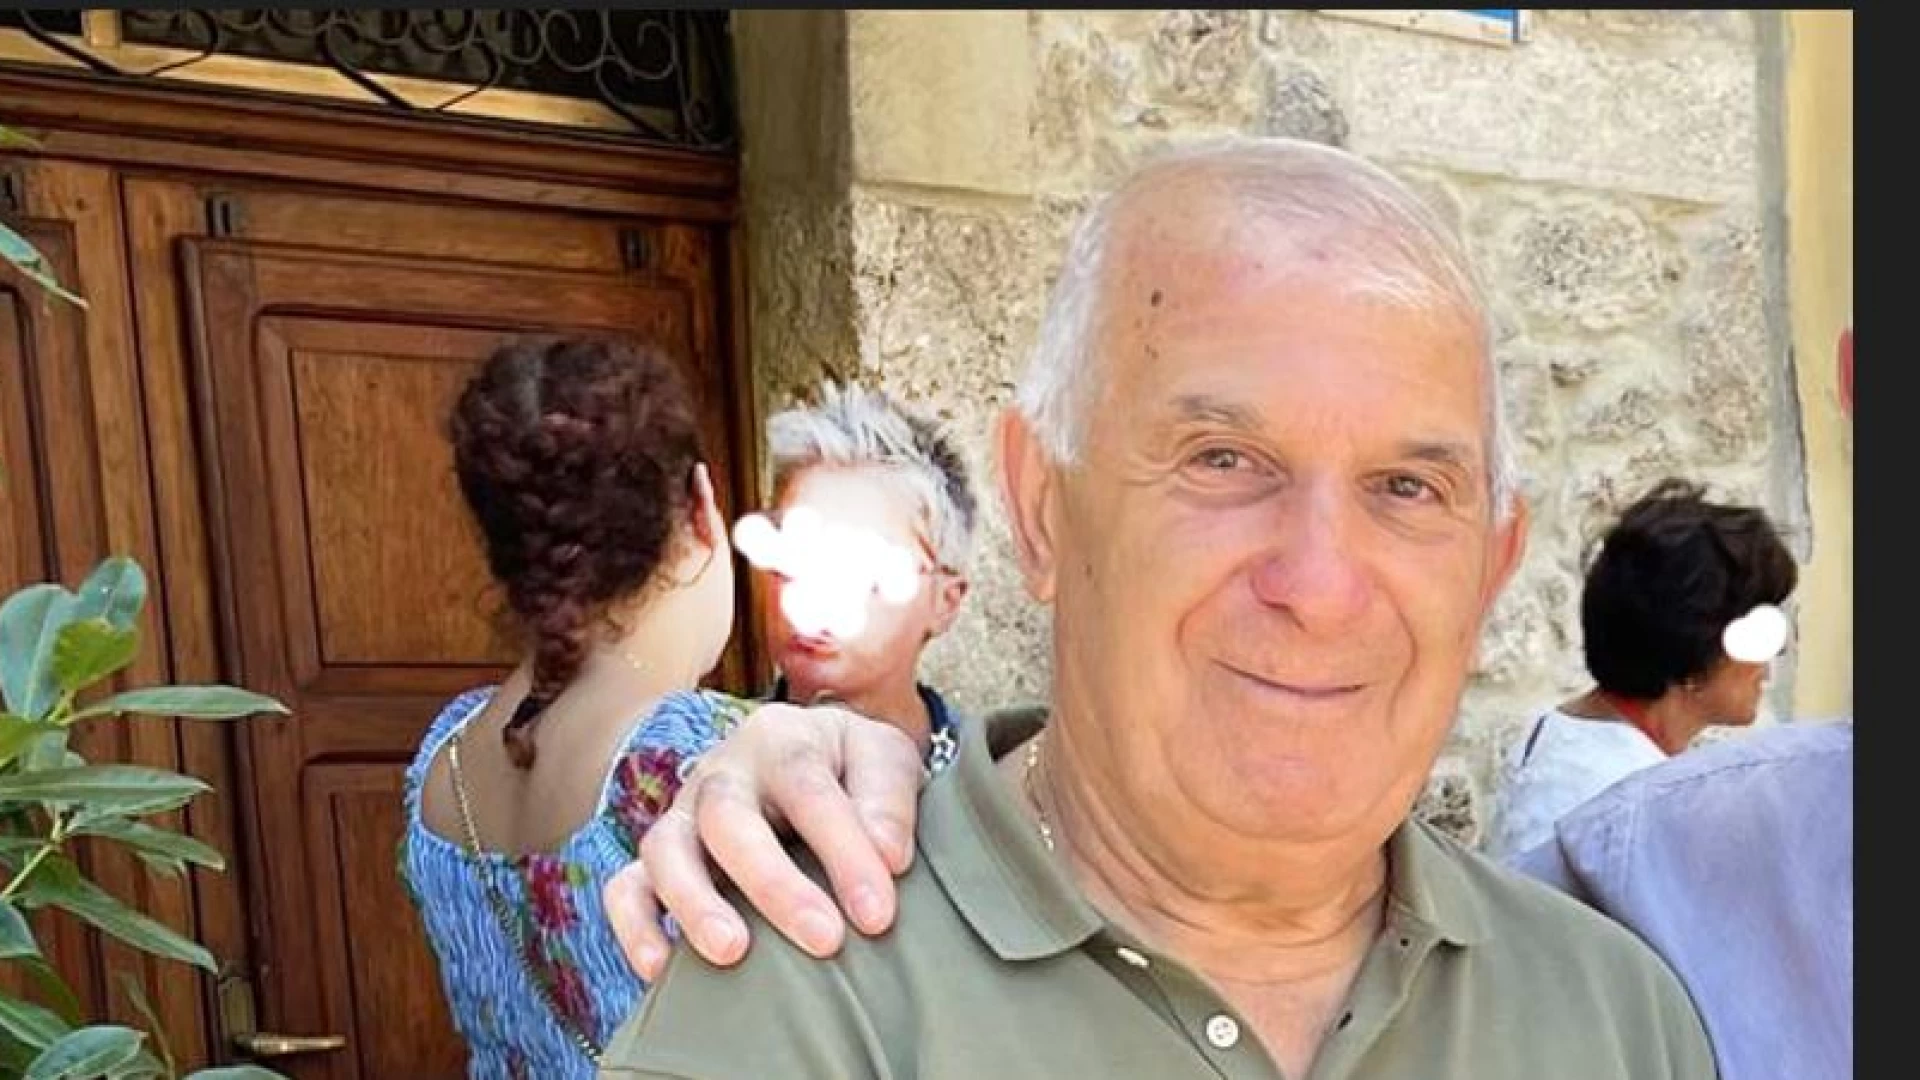 L’Angolo degli auguri: “Buon Compleanno a Stefano Di Vito. Oggi il traguardo delle ottanta candeline”.